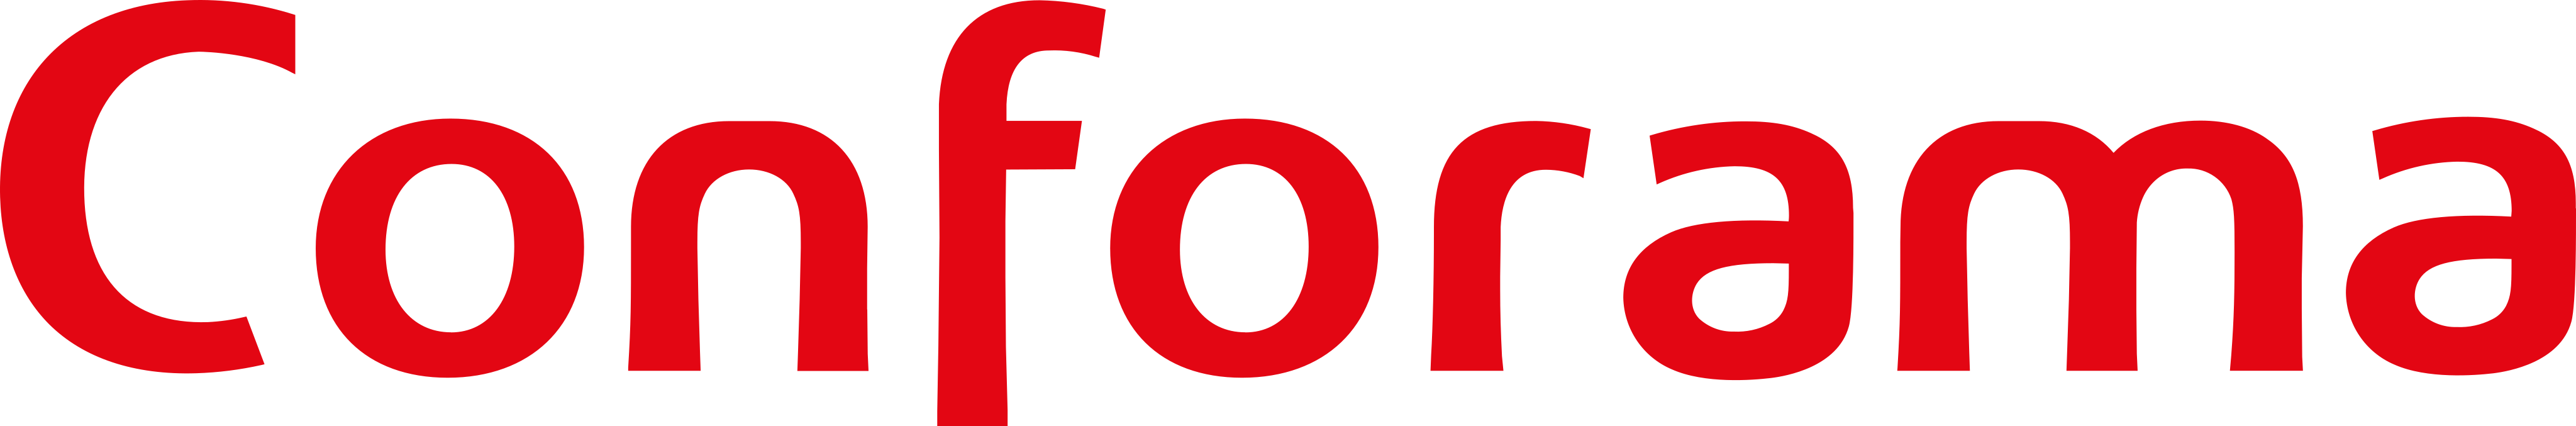 Conforama Brand Logo